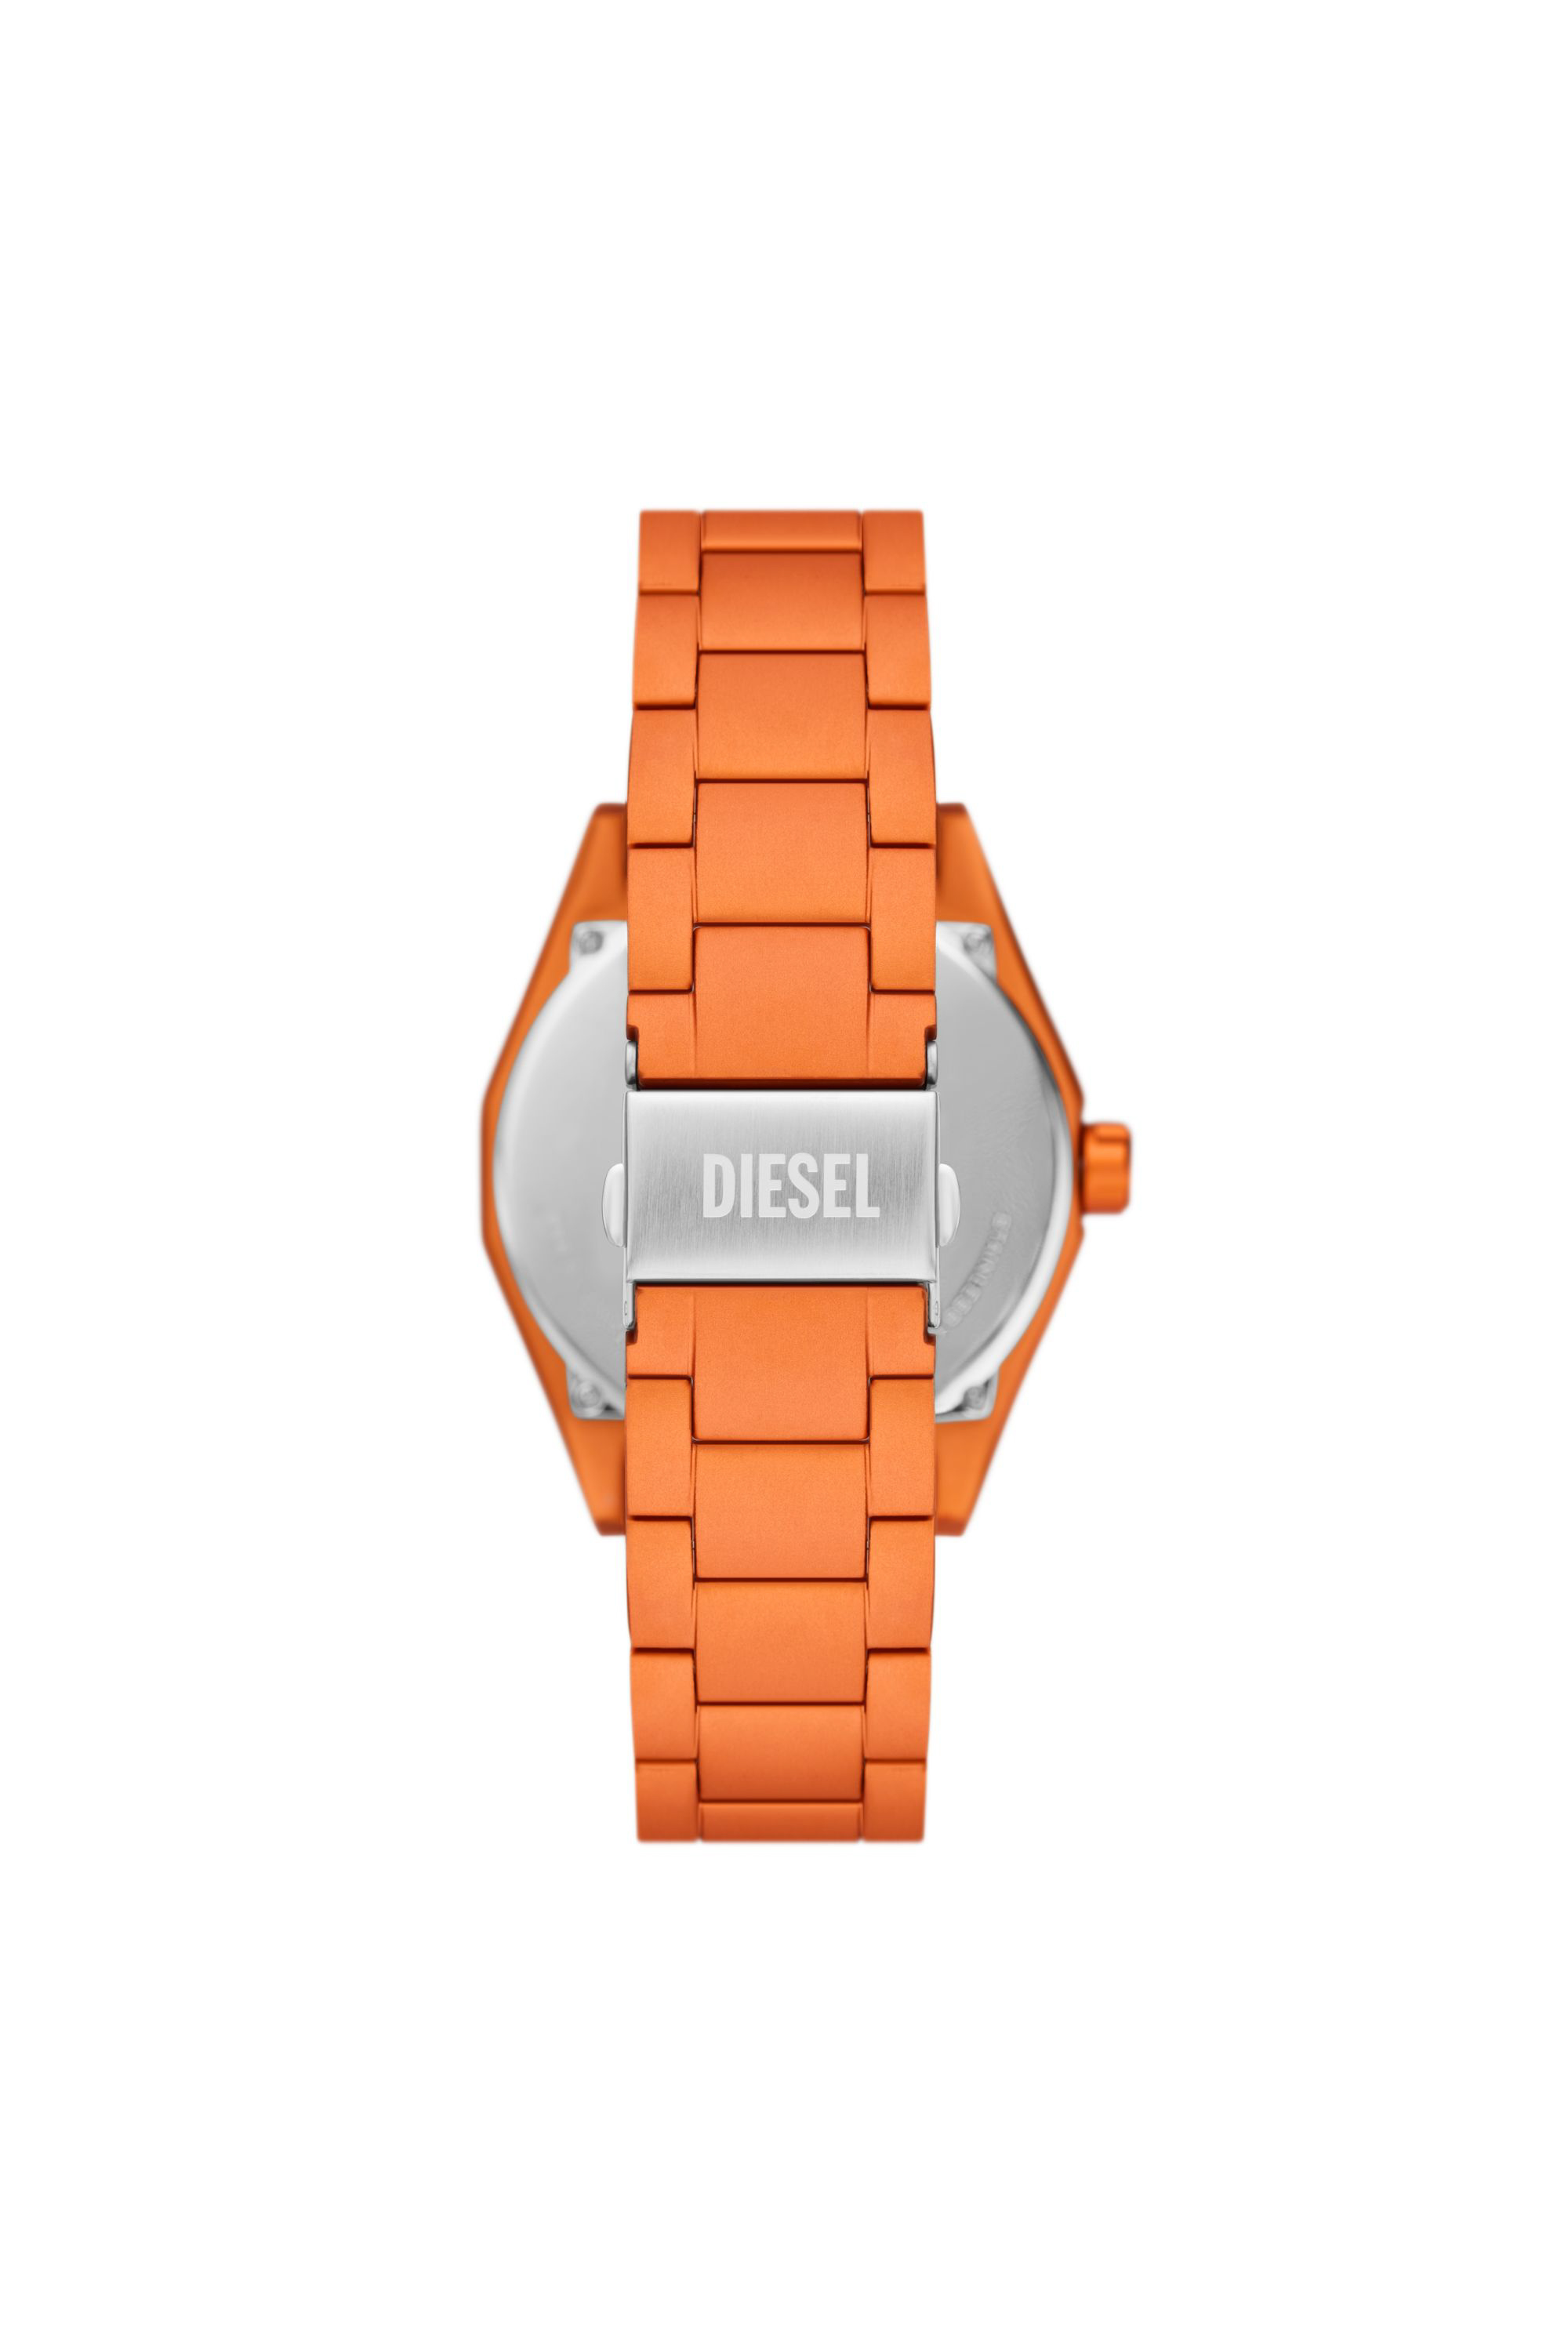 Diesel - DZ2209, Orange - Image 2